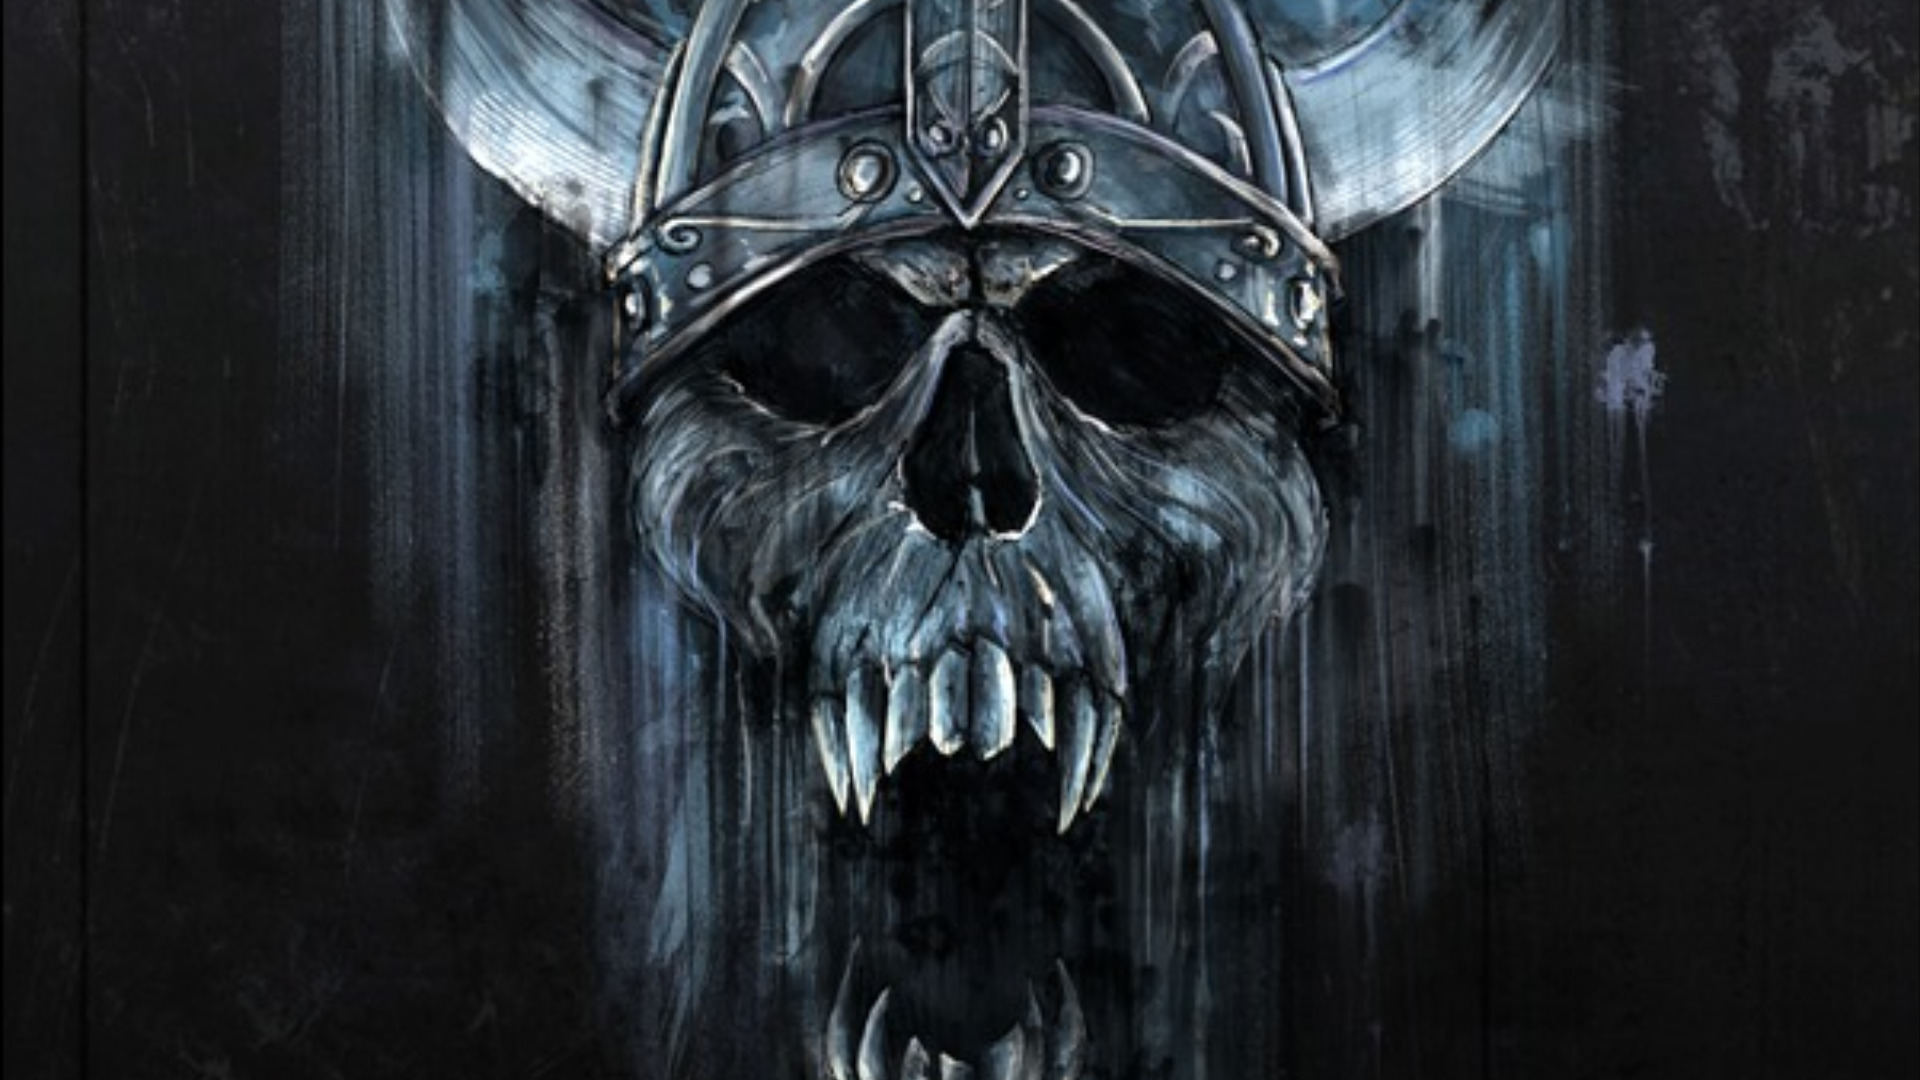 skull art wallpaper,darkness,skull,fictional character,illustration,ghost